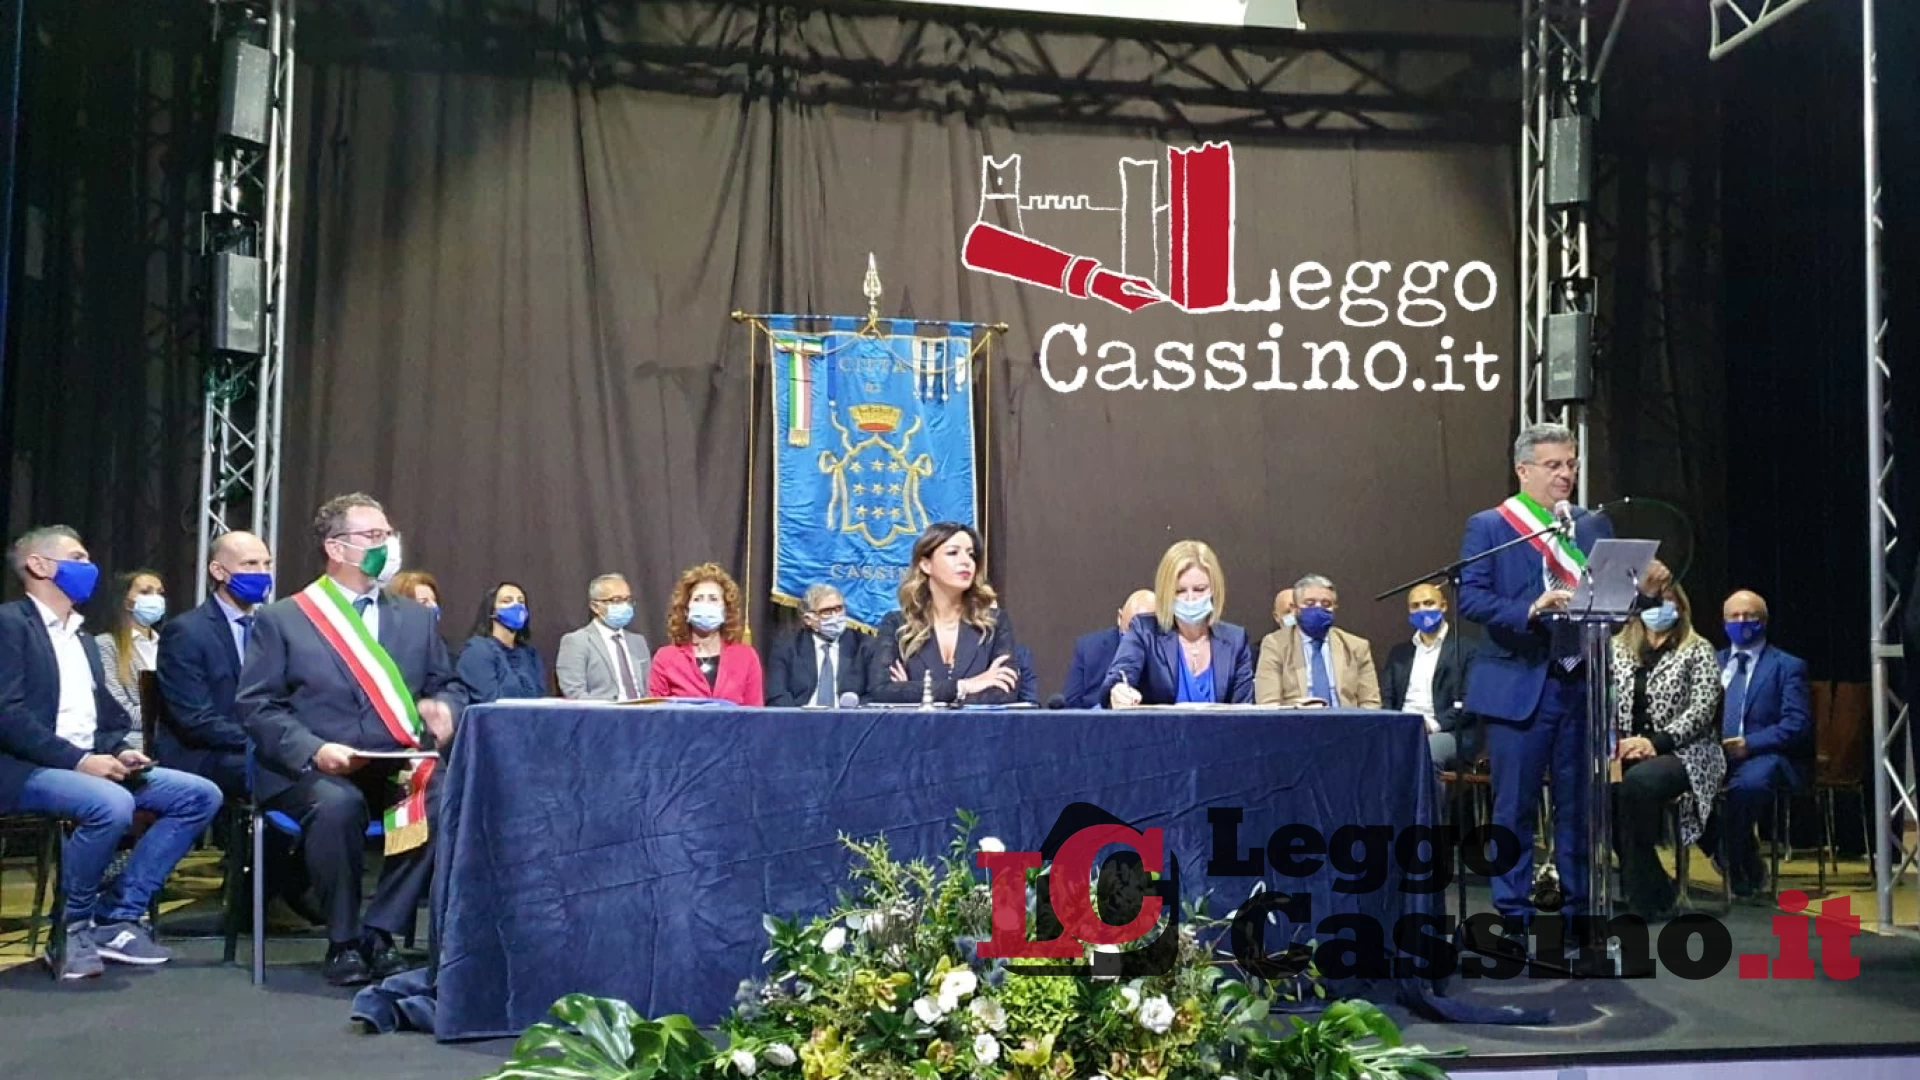 Comunista, antifascista e madre costituente: Cassino rende omaggio a Maria Maddalena Rossi [VIDEO E FOTO GALLERY]